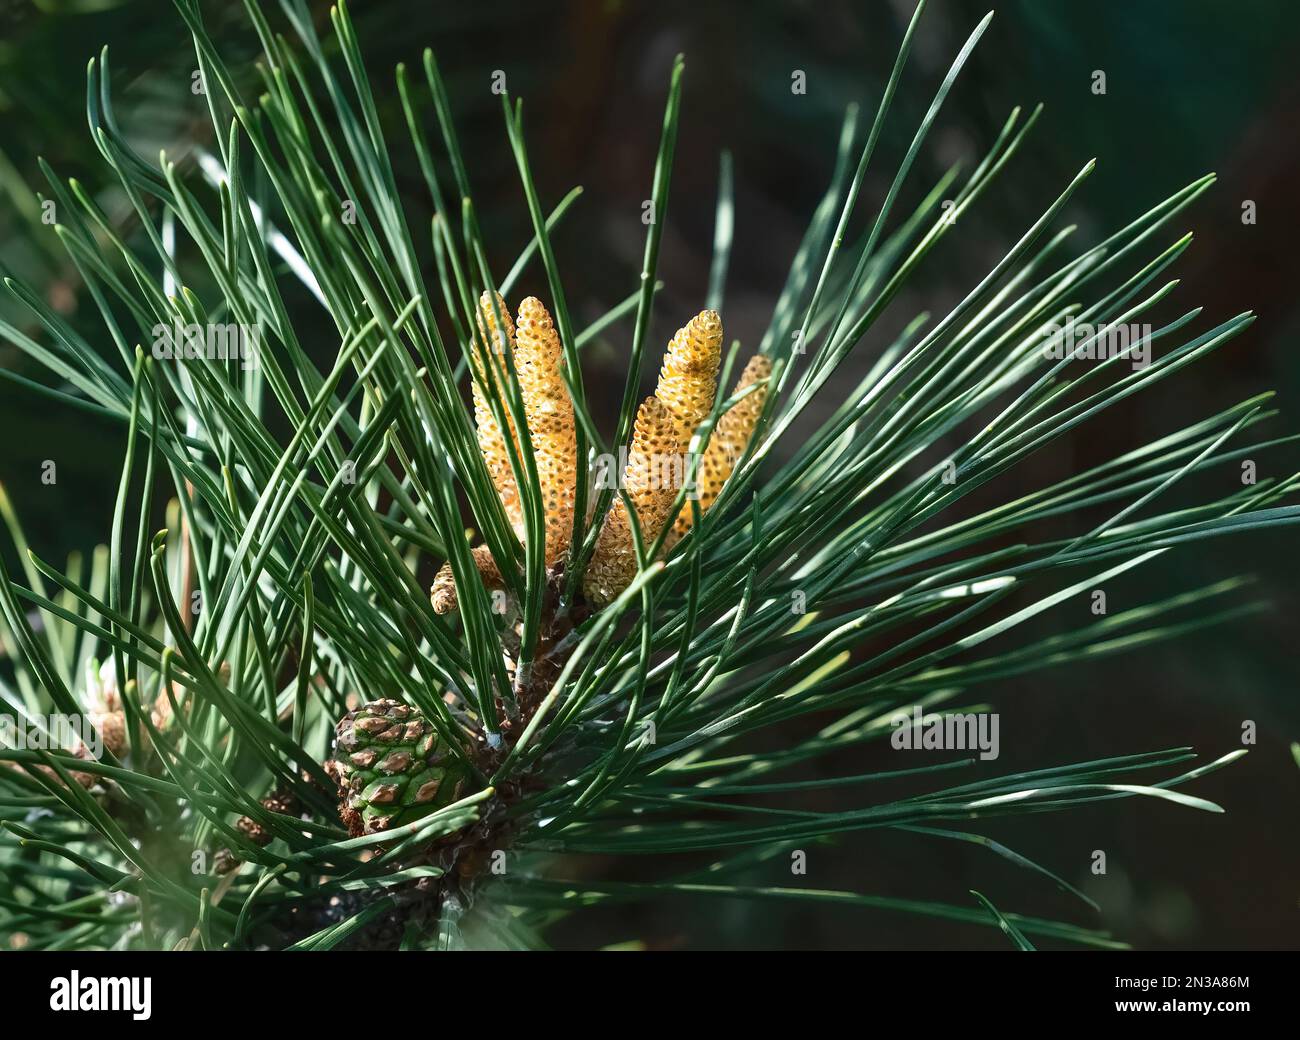 Nahaufnahme eines Scotch Pine Tree oder Scots Pine mit sich entwickelnden Zapfen, die gelben oder goldenen männlichen Zapfen sind im Bild zentriert und der grüne weibliche Zapfen Stockfoto